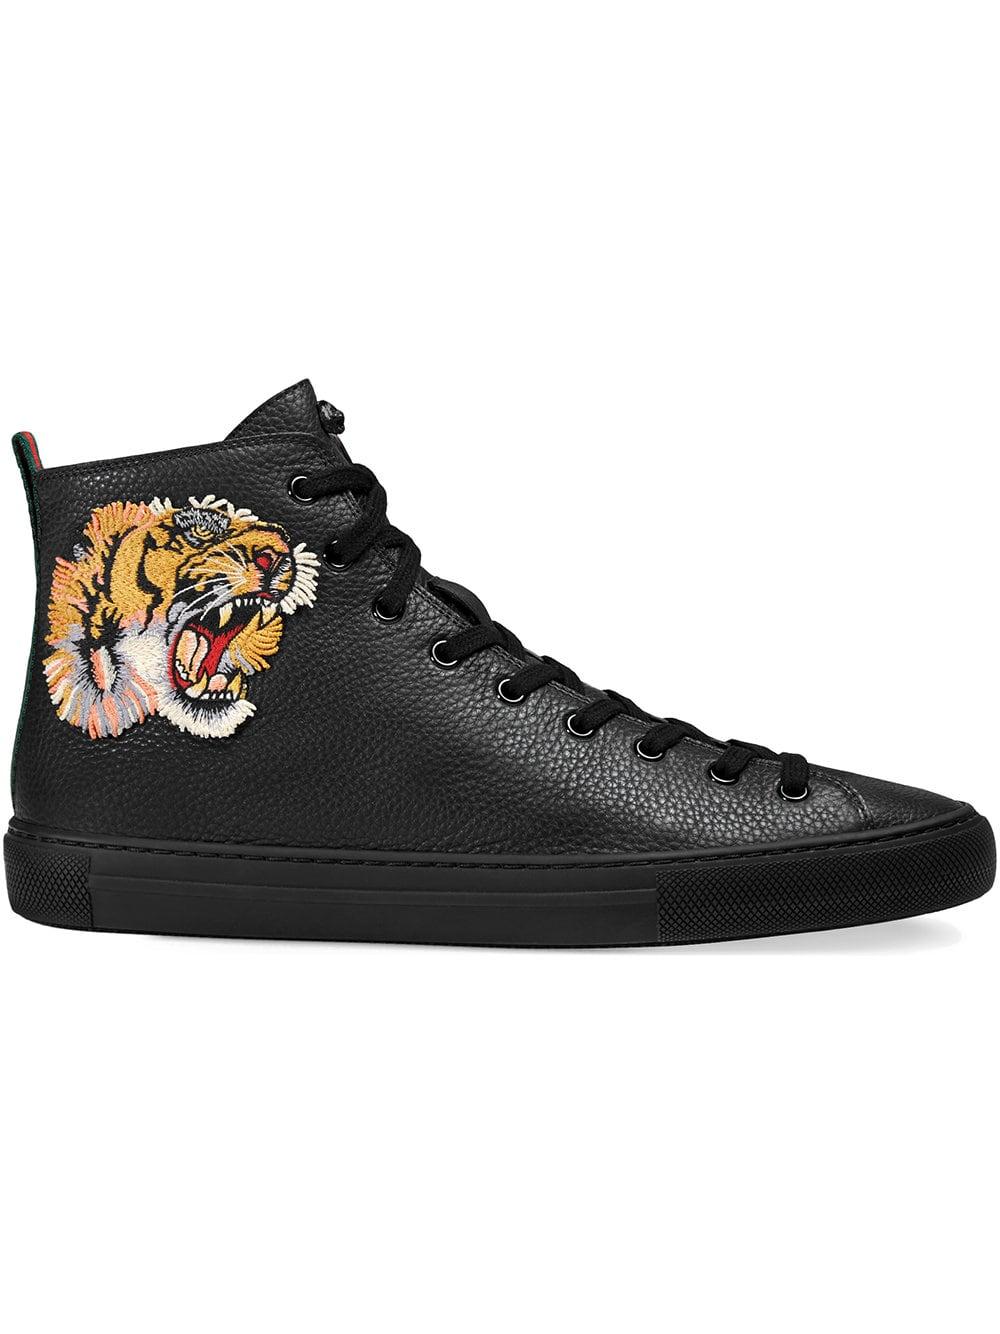 scarpe gucci con la tigre